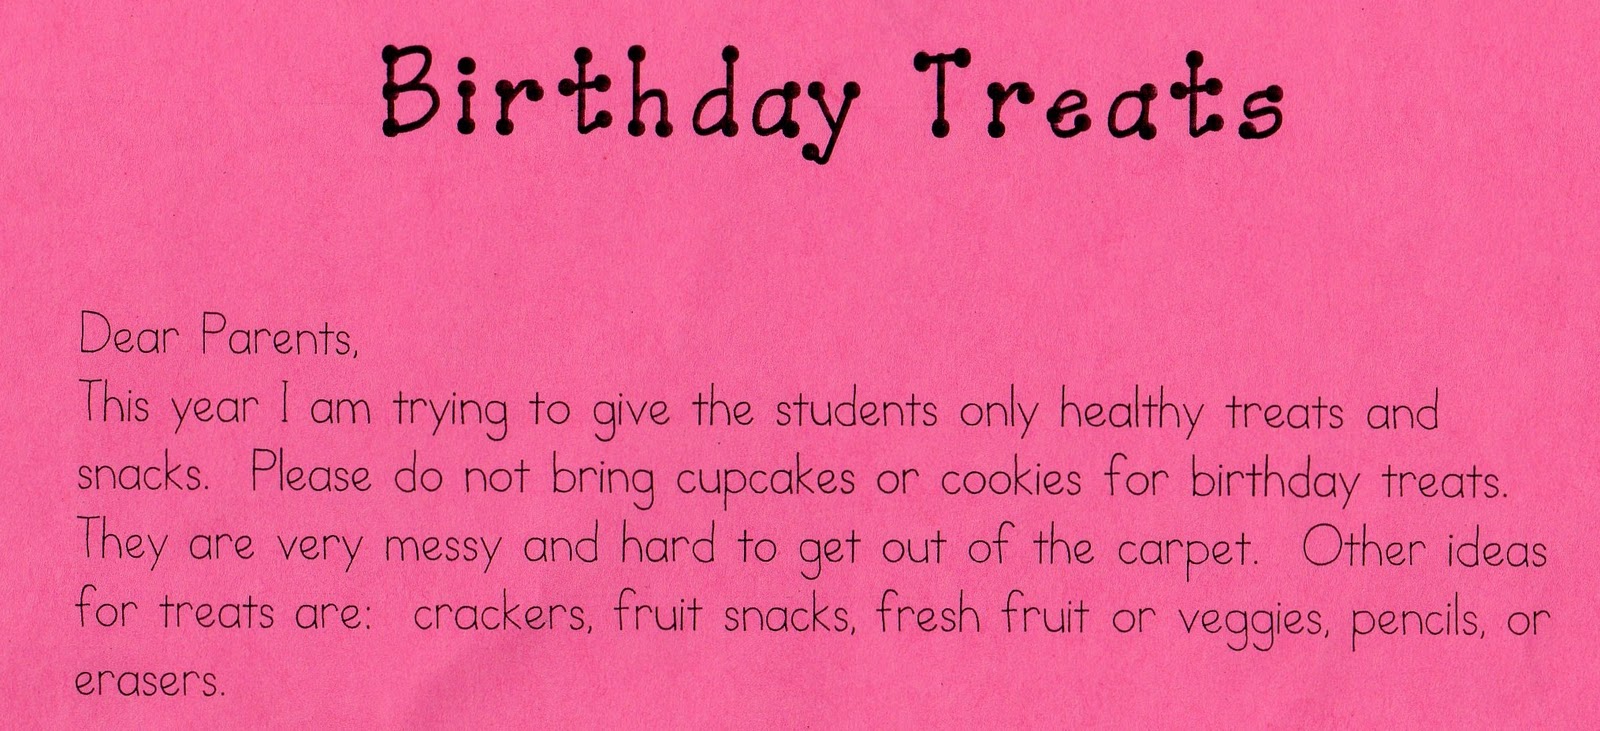 Birthday Treat Ideas